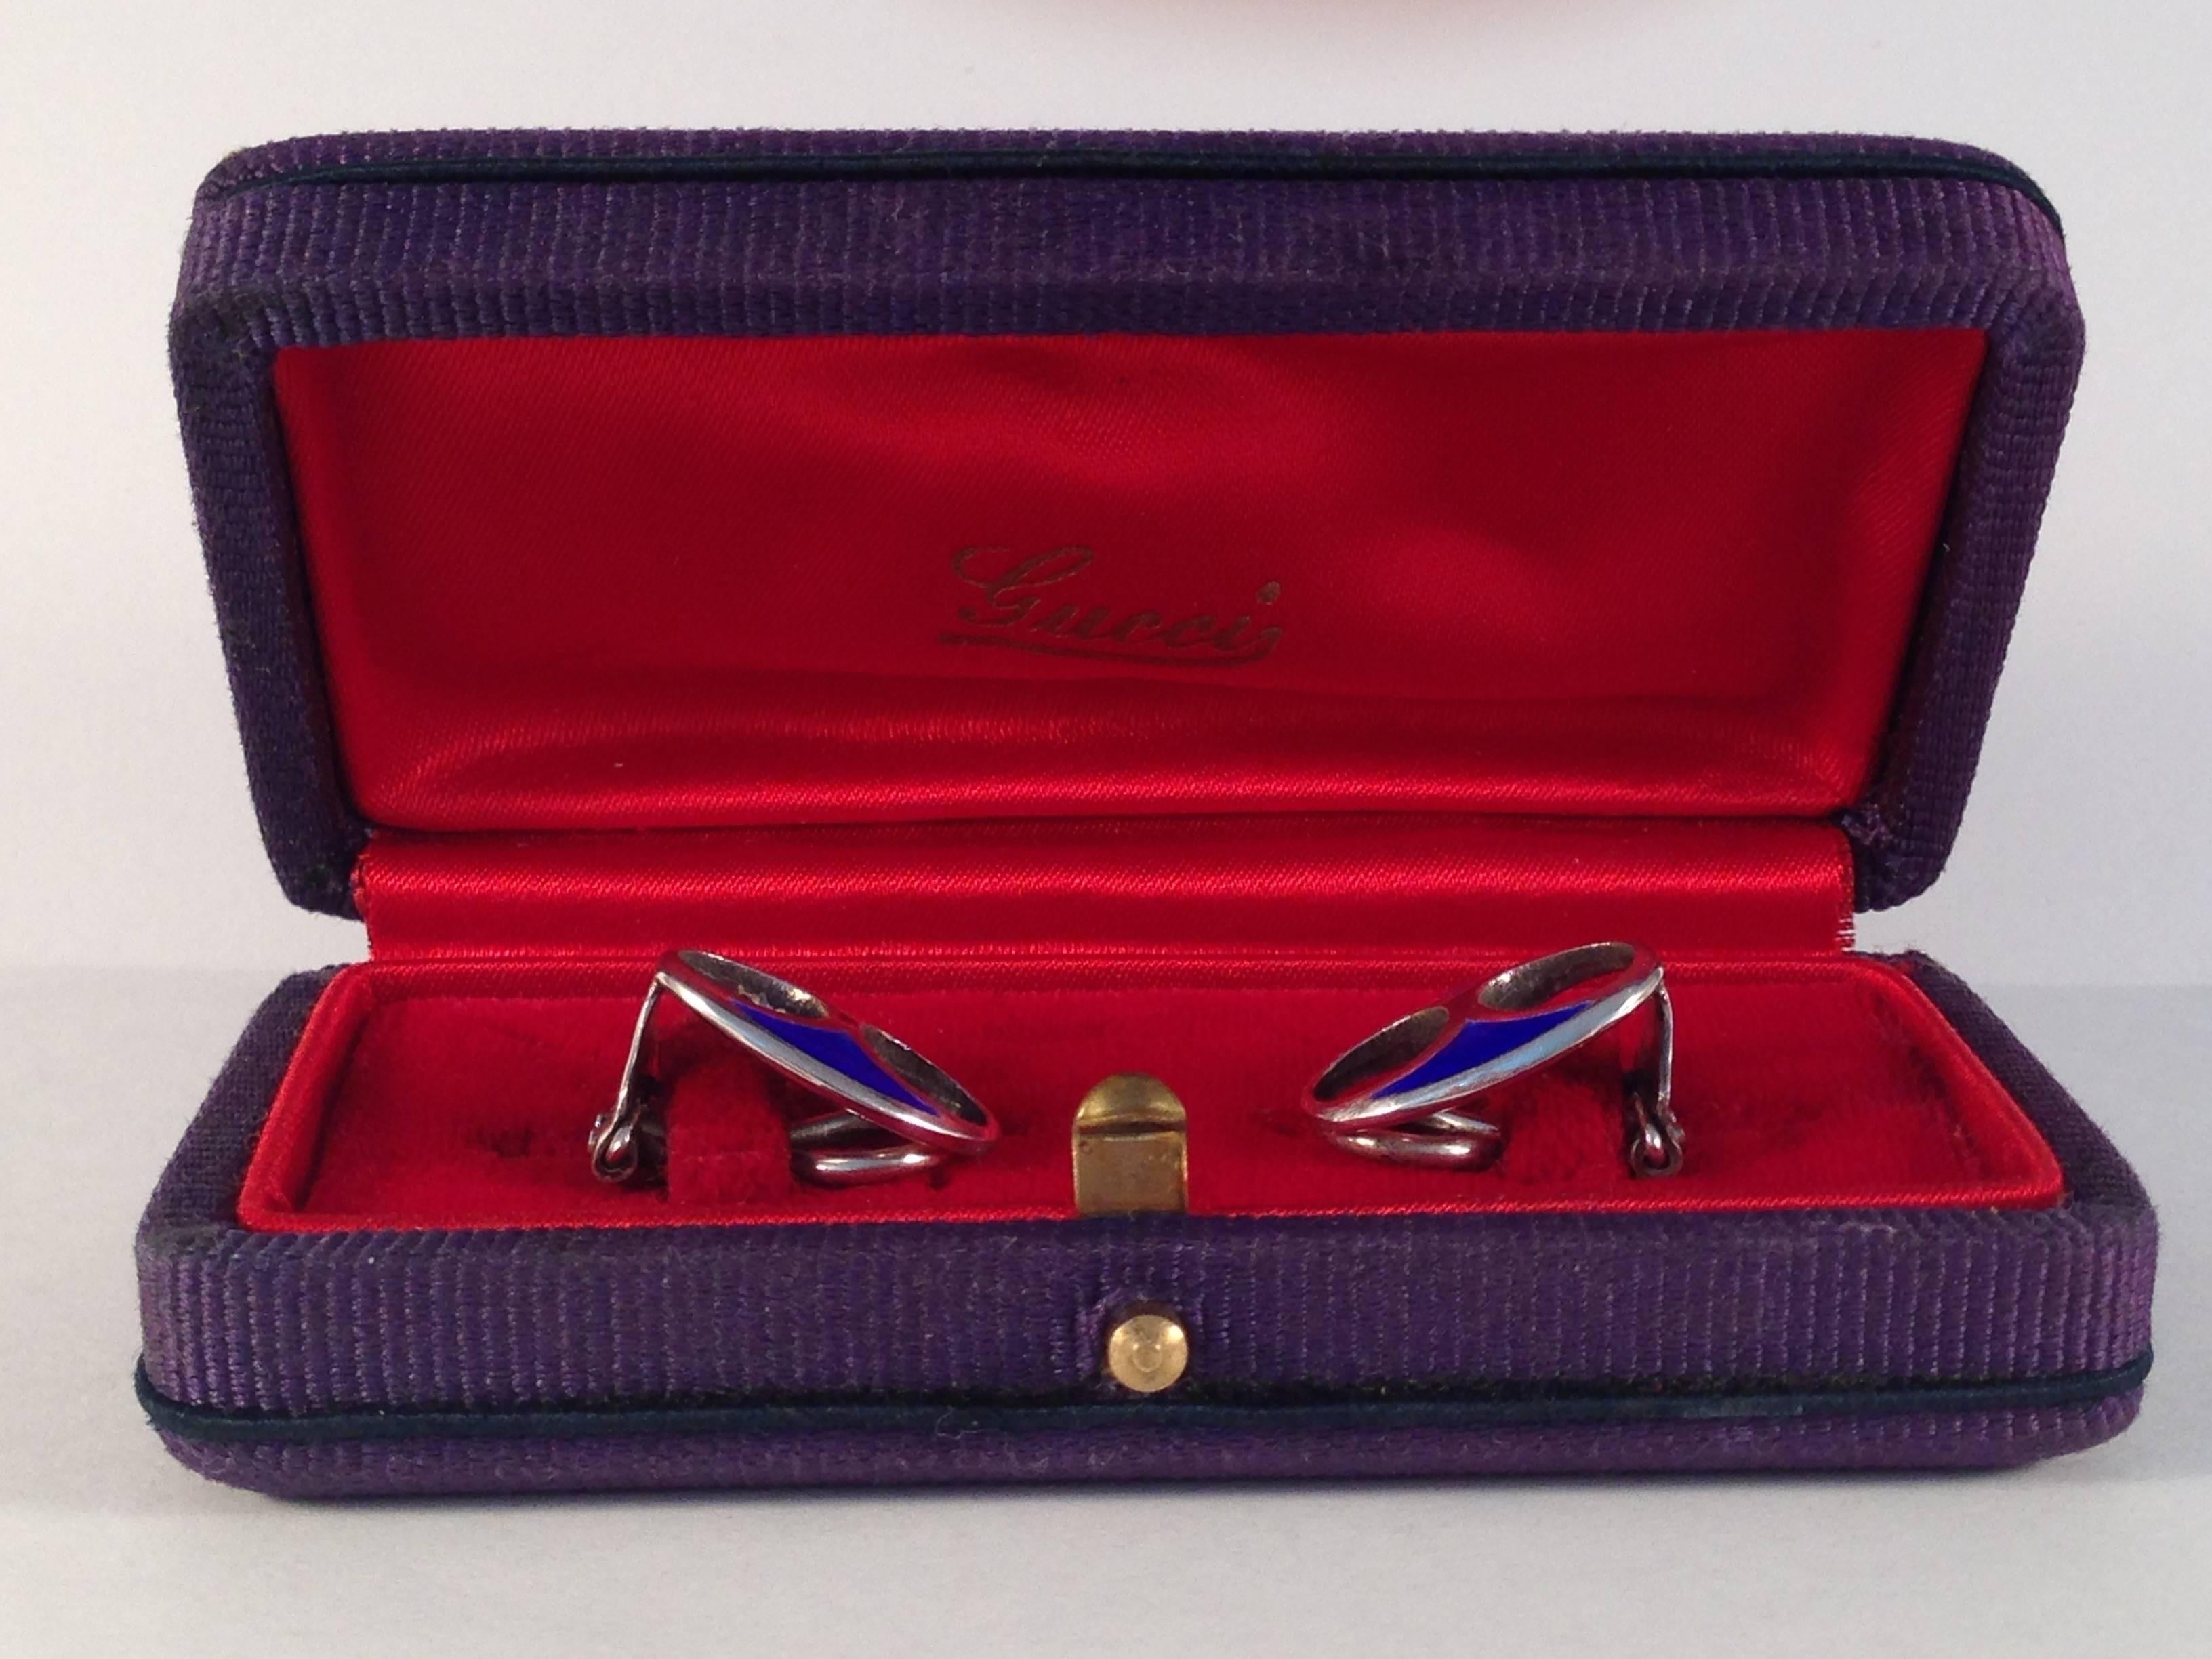 Beautiful 1970s sterling and blue enamel clip on earrings. The earrings measure 5/8